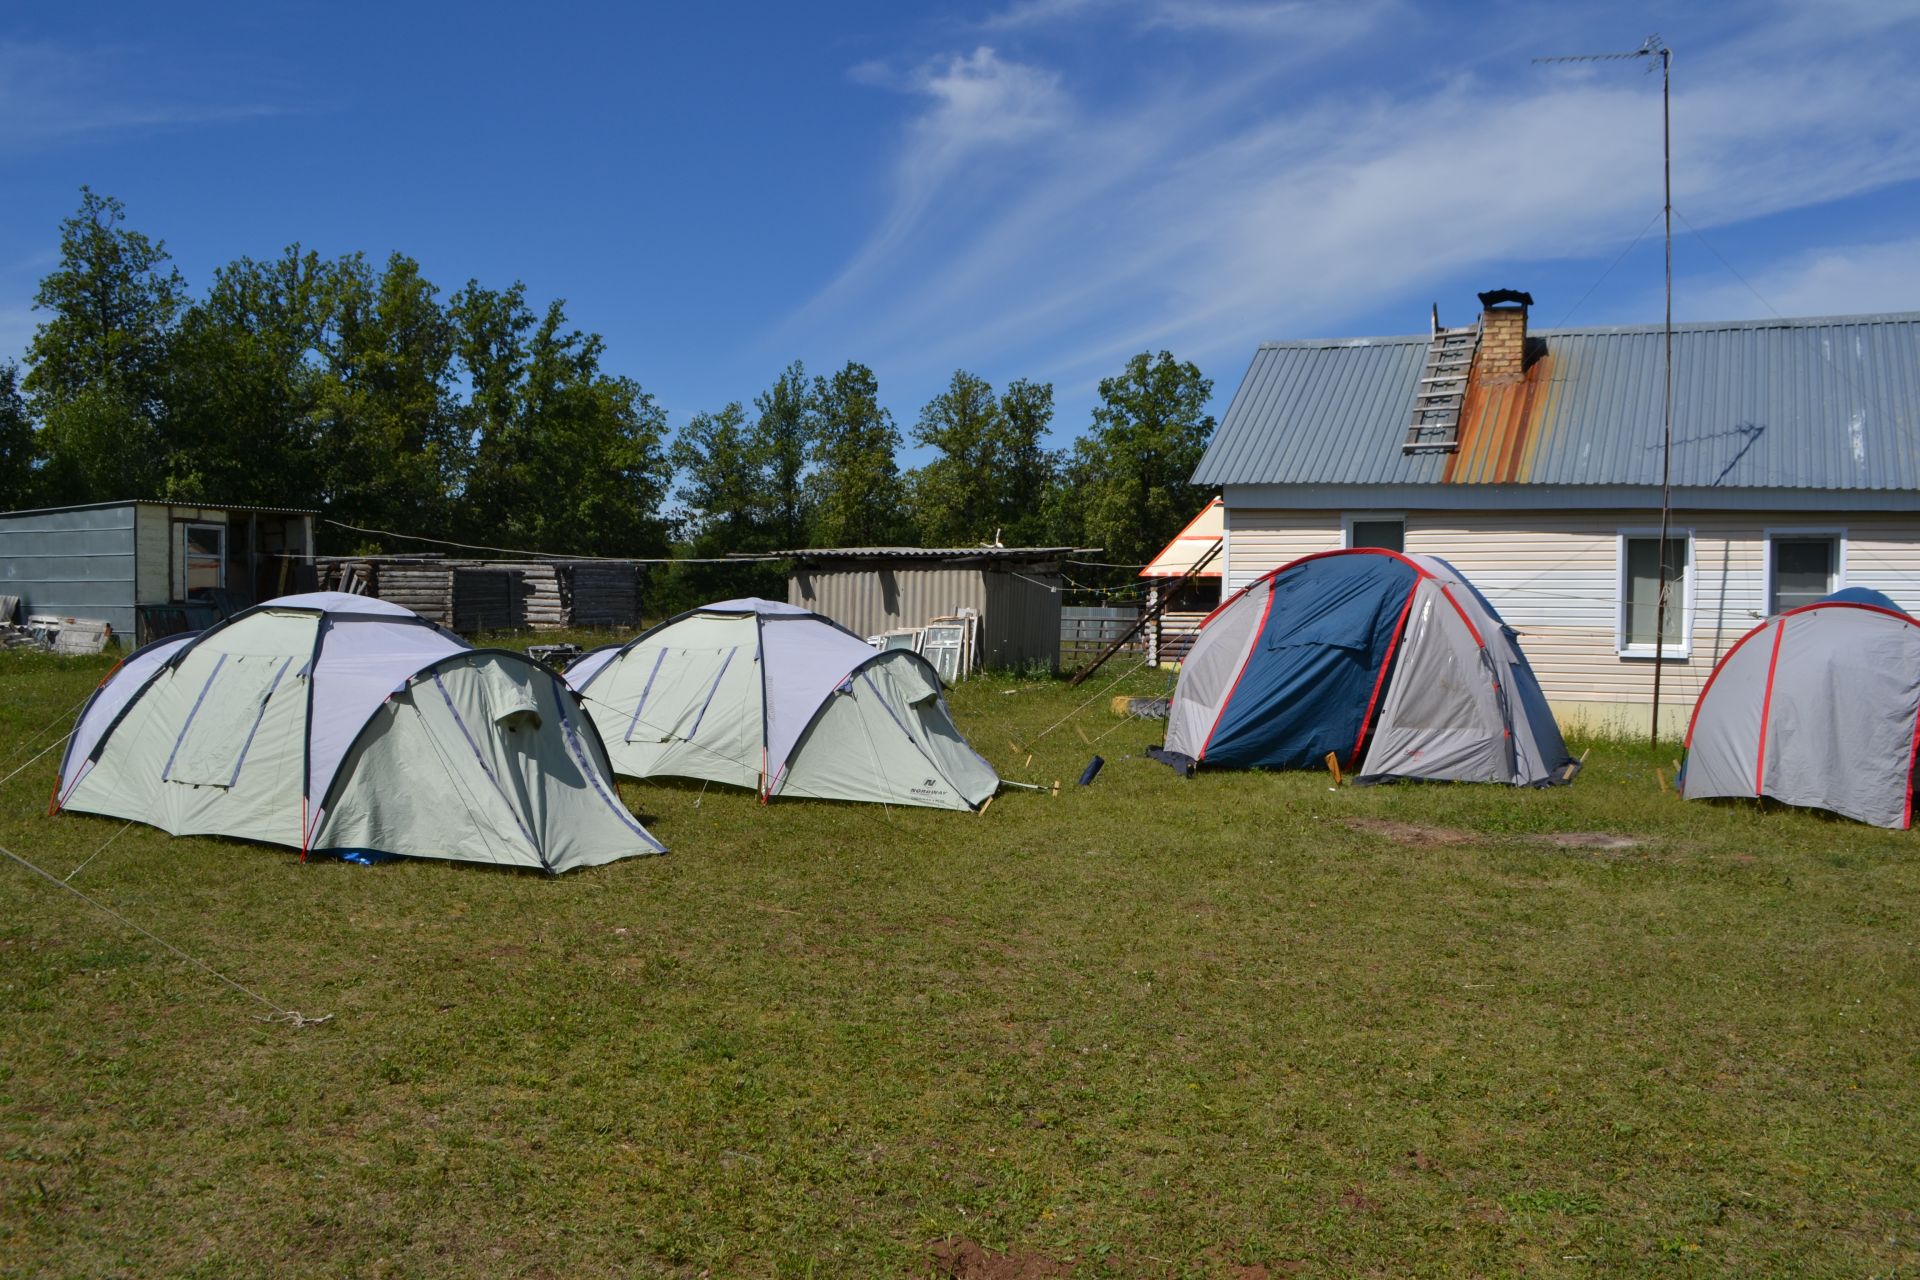 В Азнакаево заработал палаточной лагерь “Родина”